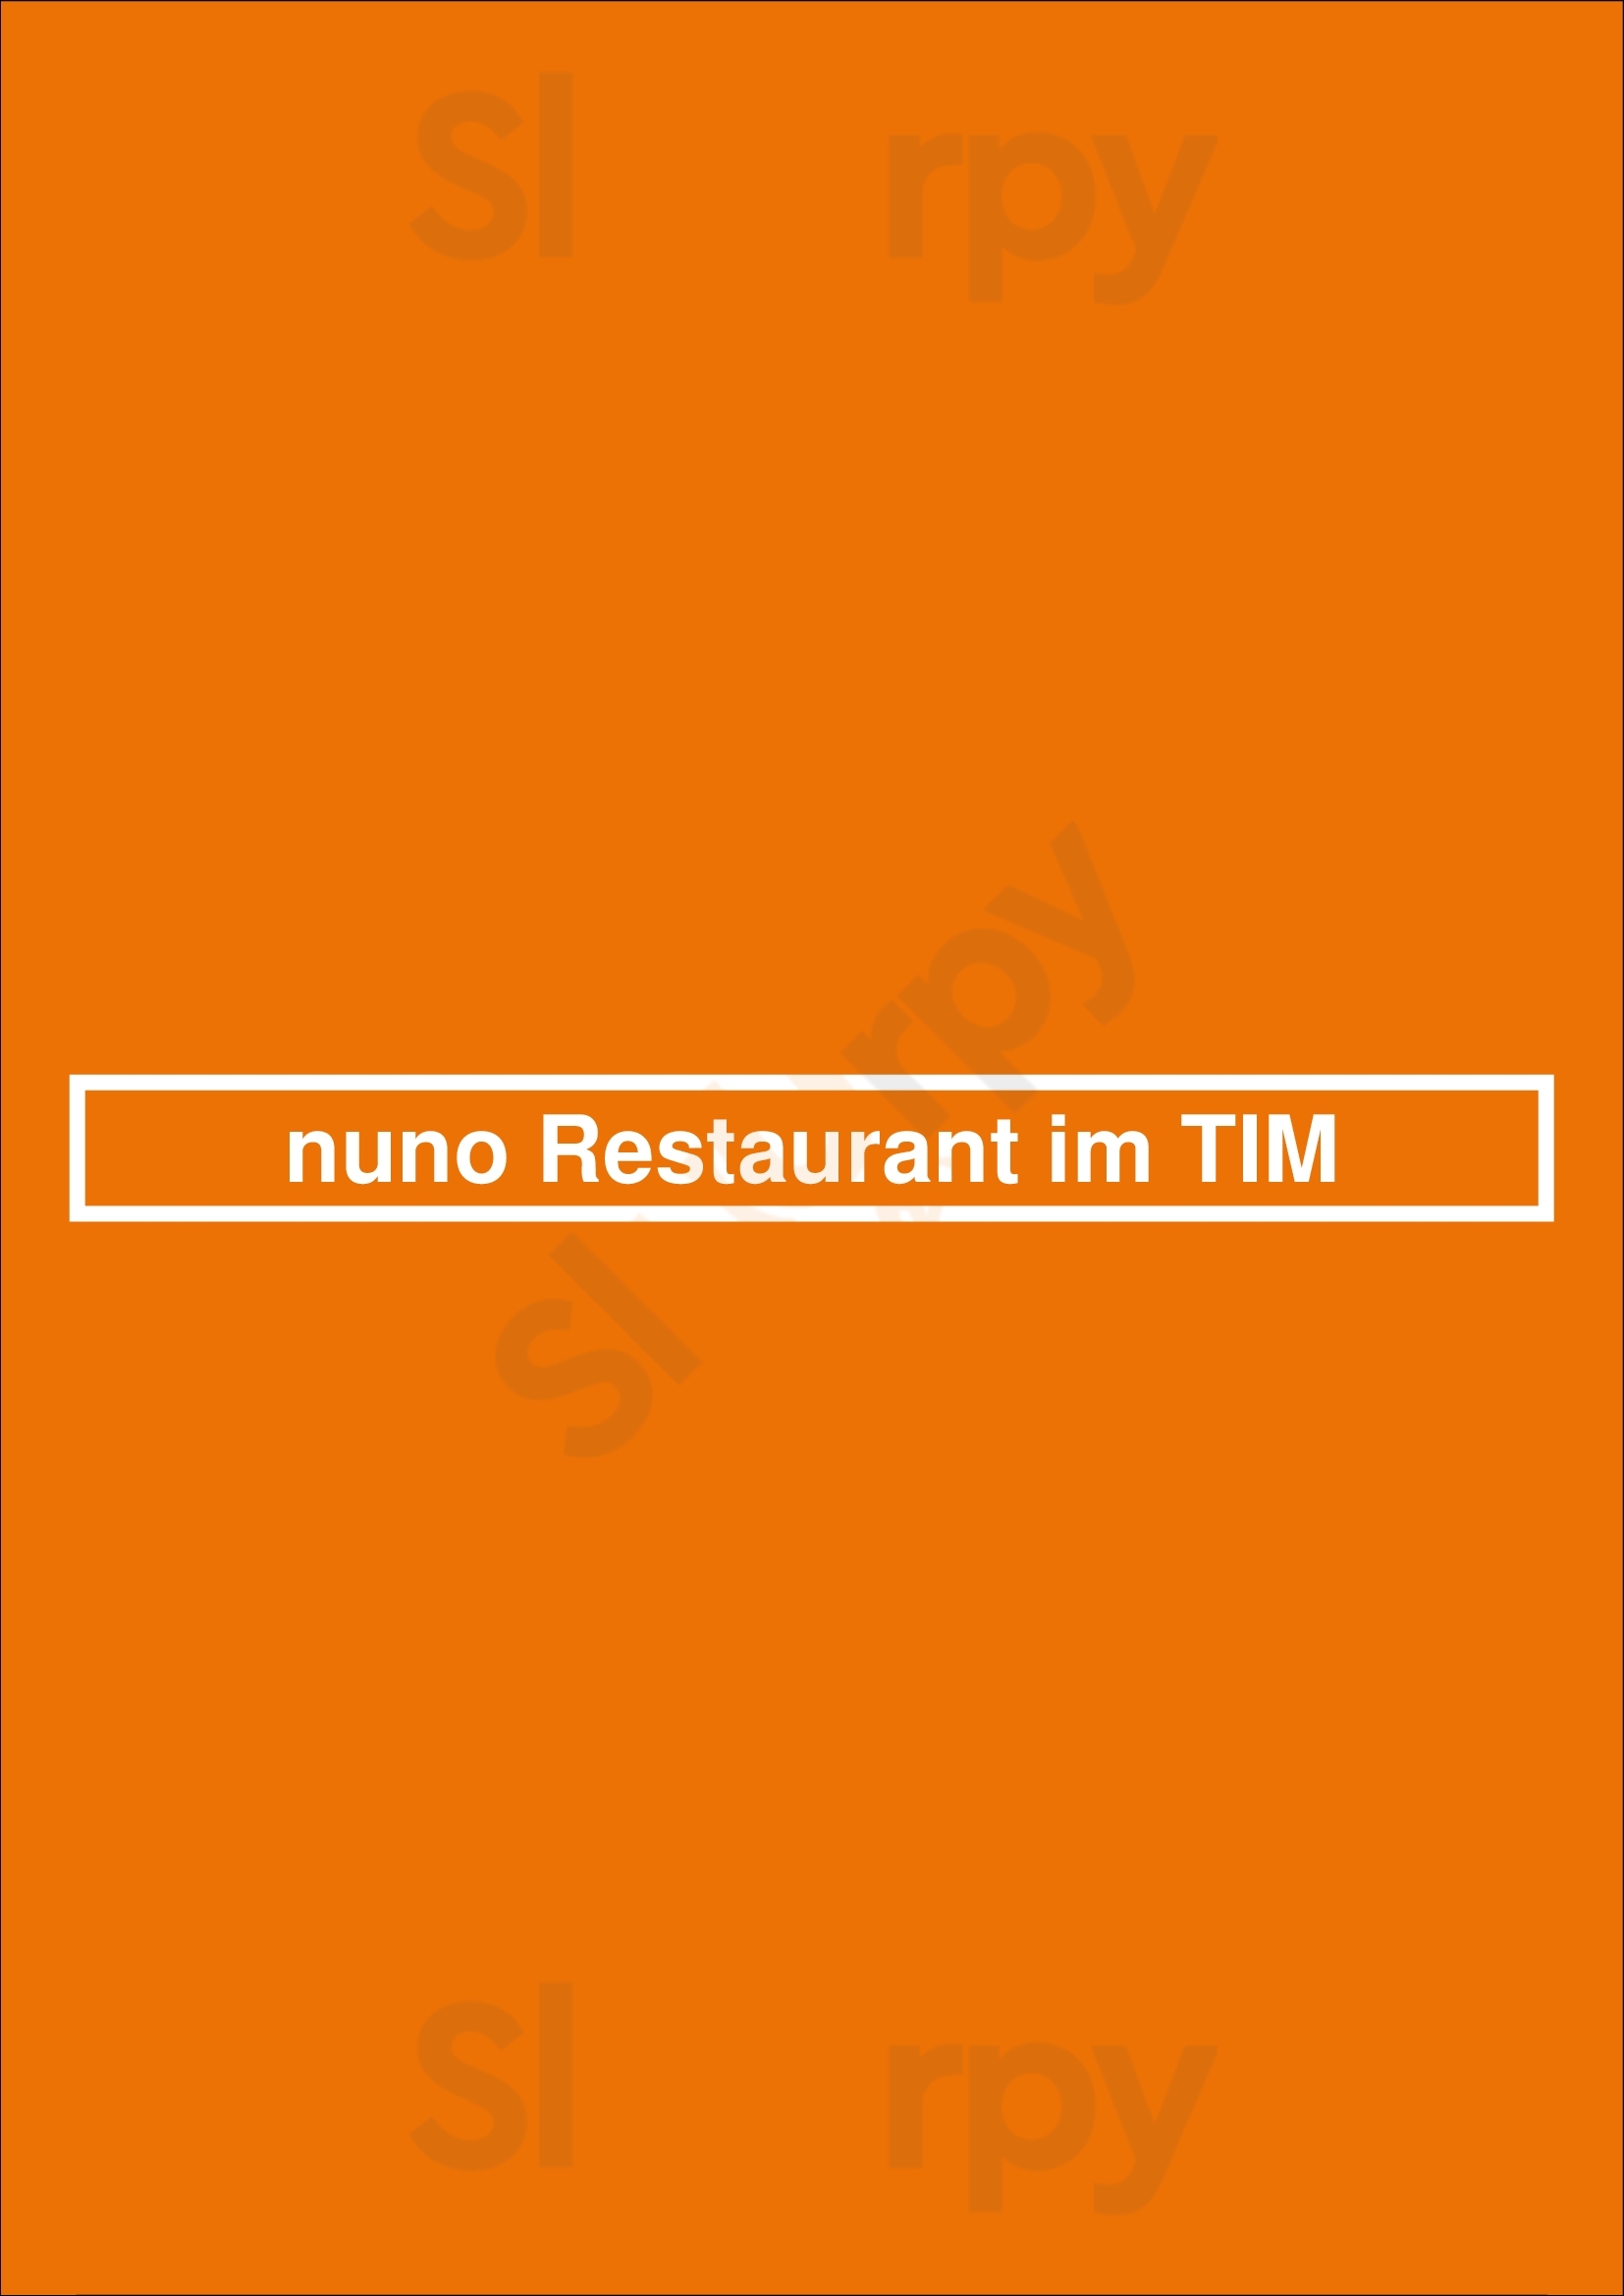 Nuno Restaurant Im Tim Augsburg Menu - 1